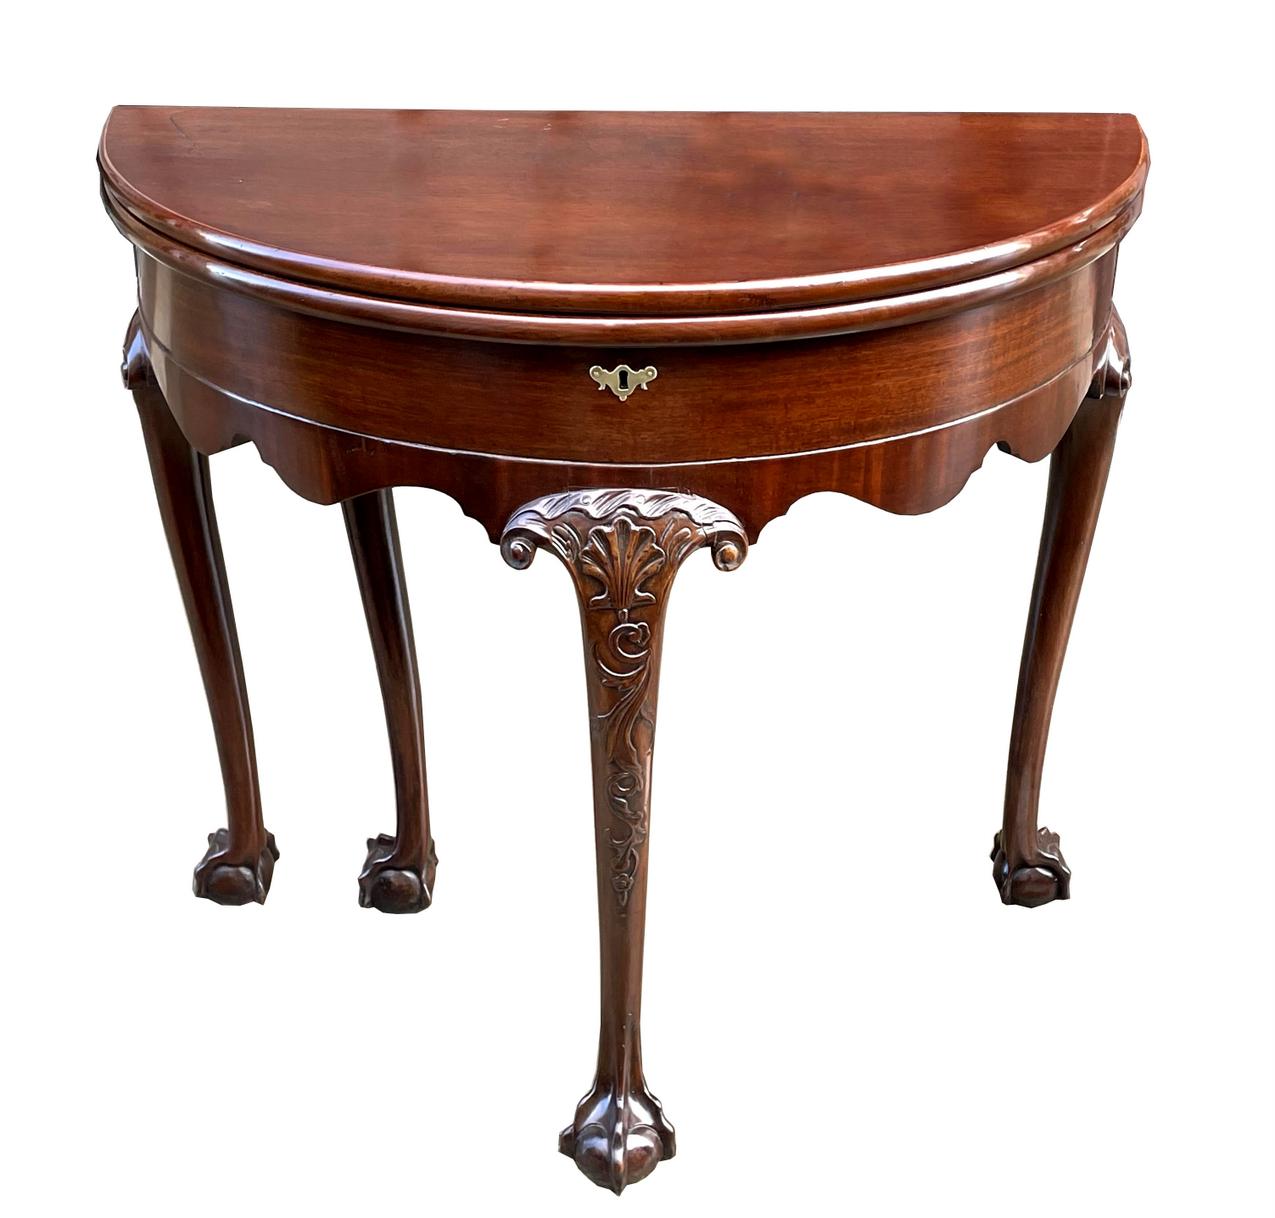 Ein hervorragendes Beispiel für einen georgianischen Demi-Lune-Spieltisch aus frühem irischem Mahagoni in hervorragender Museumsqualität. Hergestellt in Irland im letzten Viertel des achtzehnten Jahrhunderts. 

Die doppelte Klappe öffnet sich und